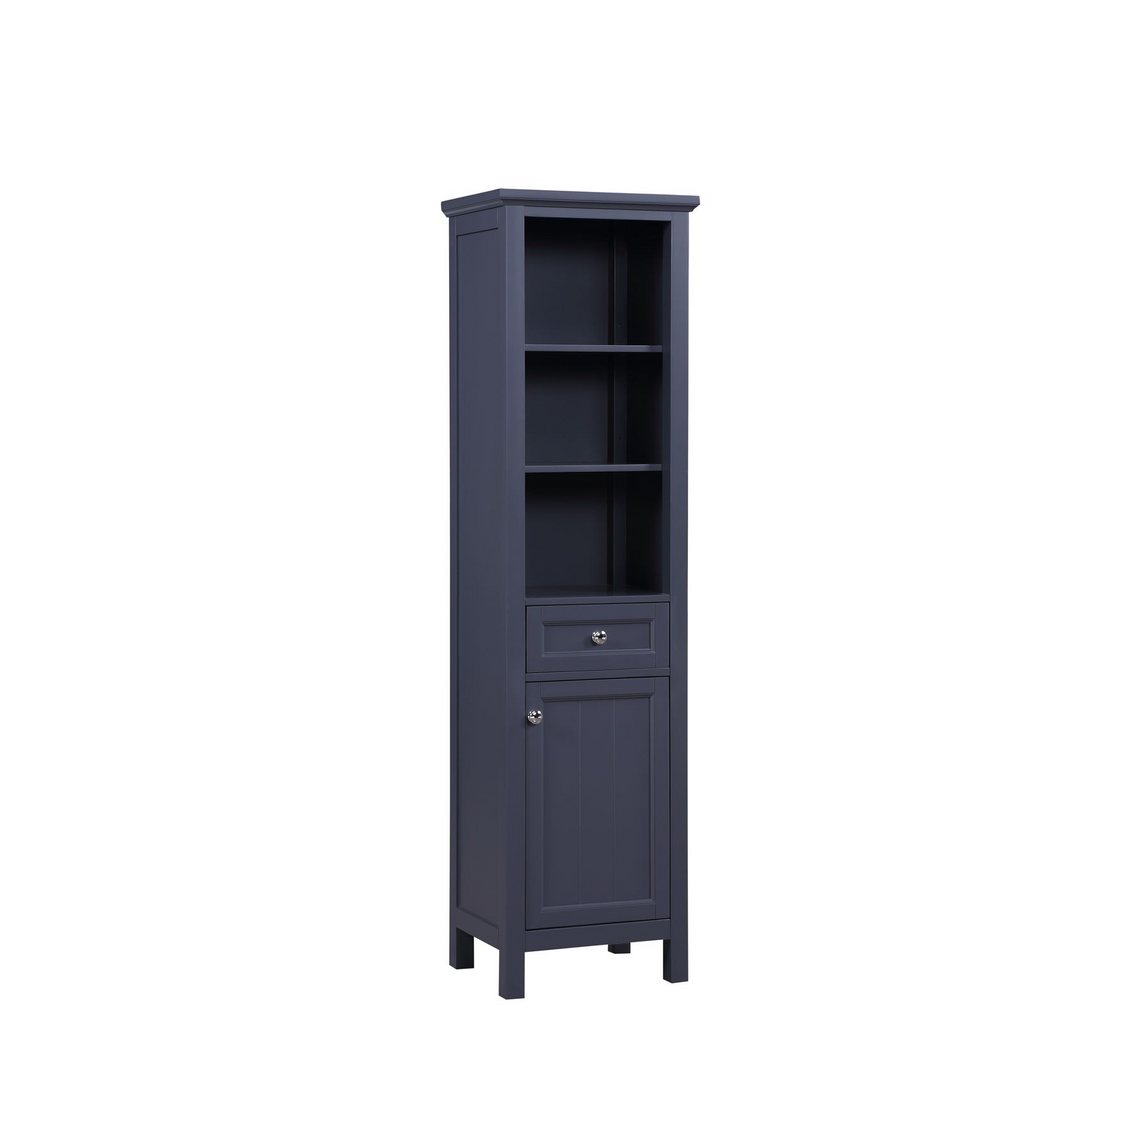 Linen Cabinet - Side Cabinet - 19 W x 15 D x 70